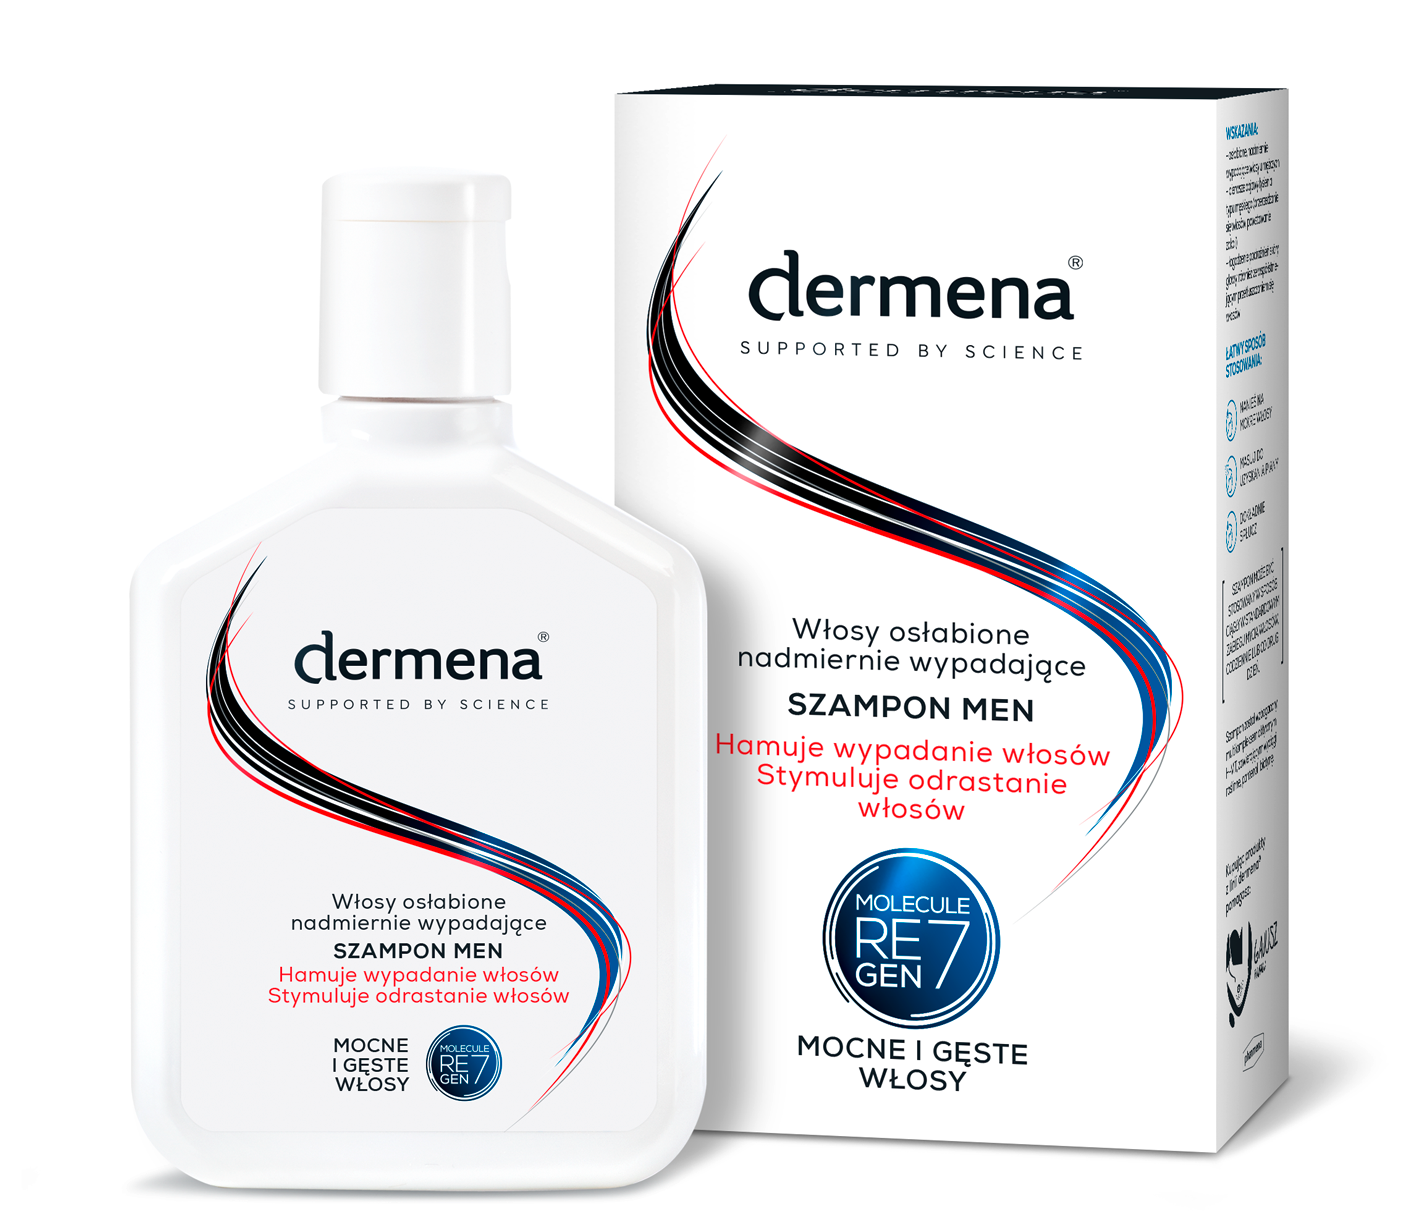 dermena repair do wypadających szampon opinie